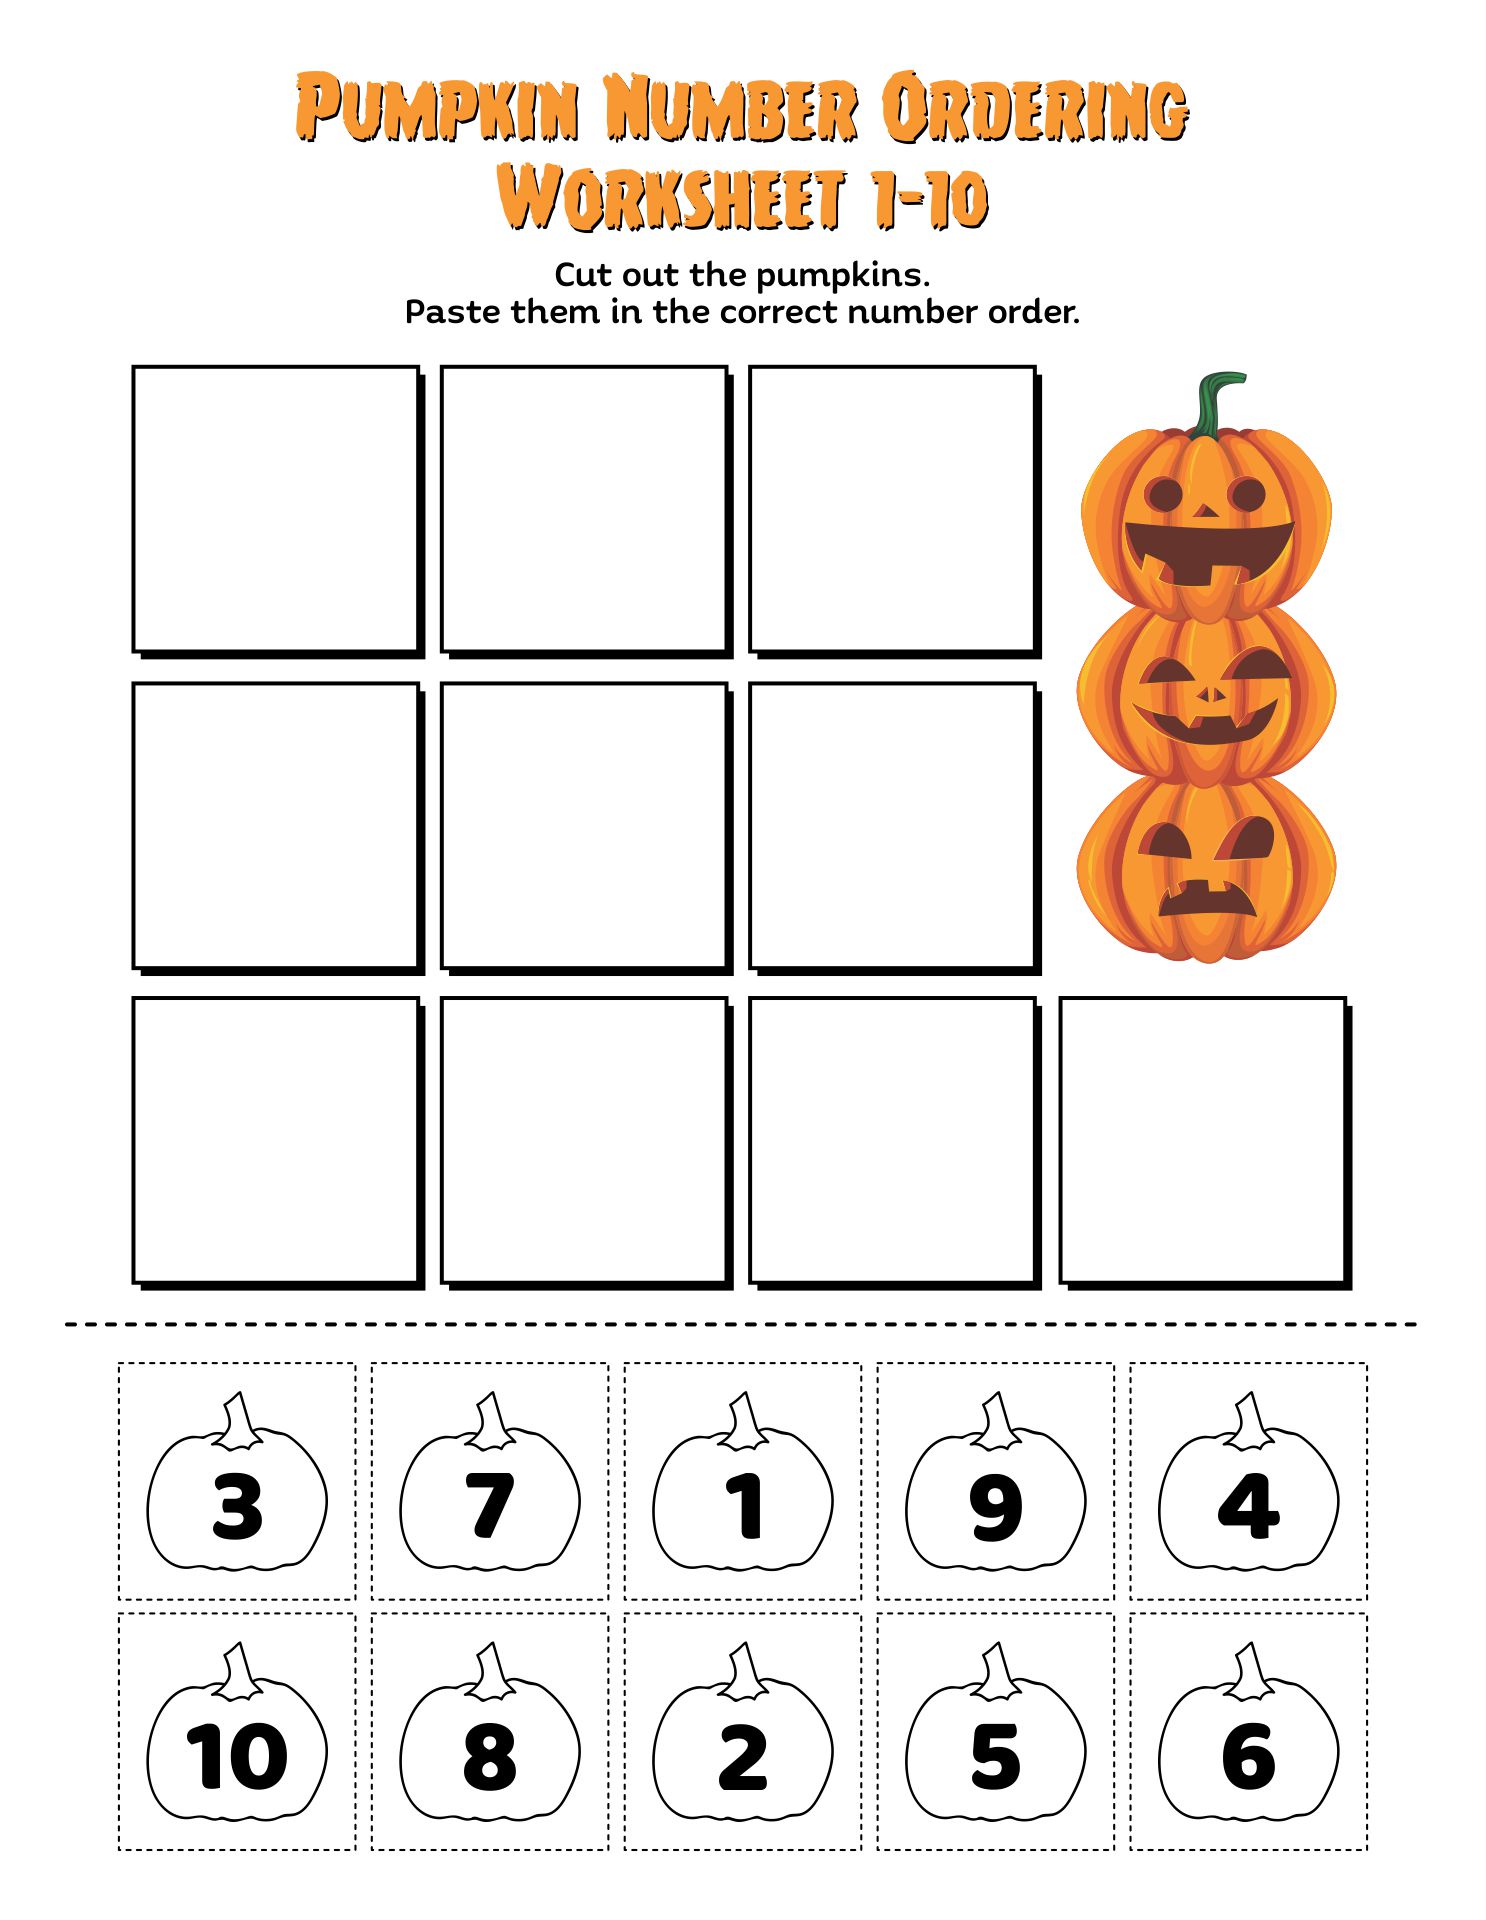 Printable Pumpkin Number Ordering Worksheet 1-10